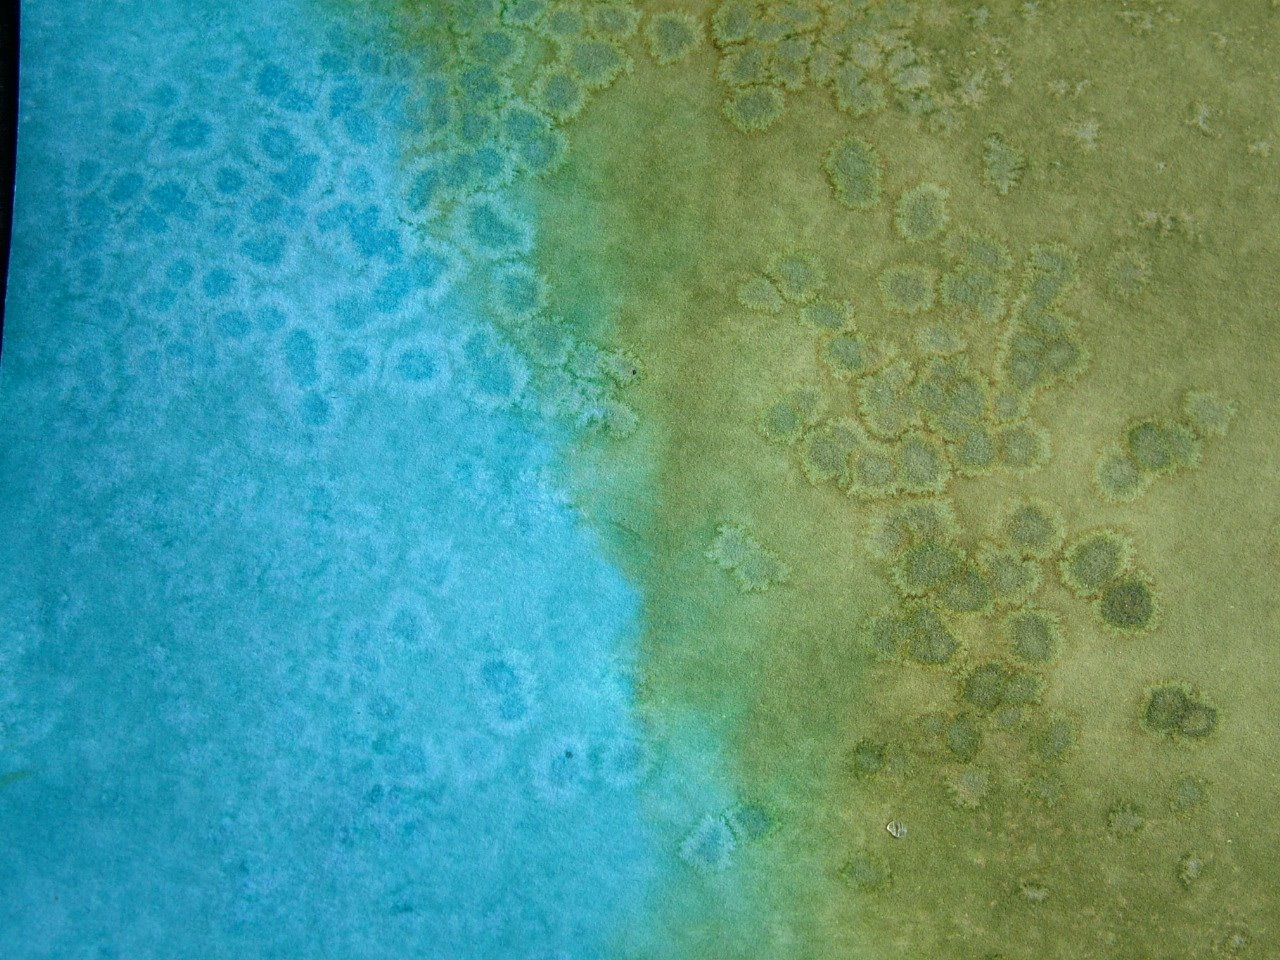 [Salt+effect+blue+green.JPG]